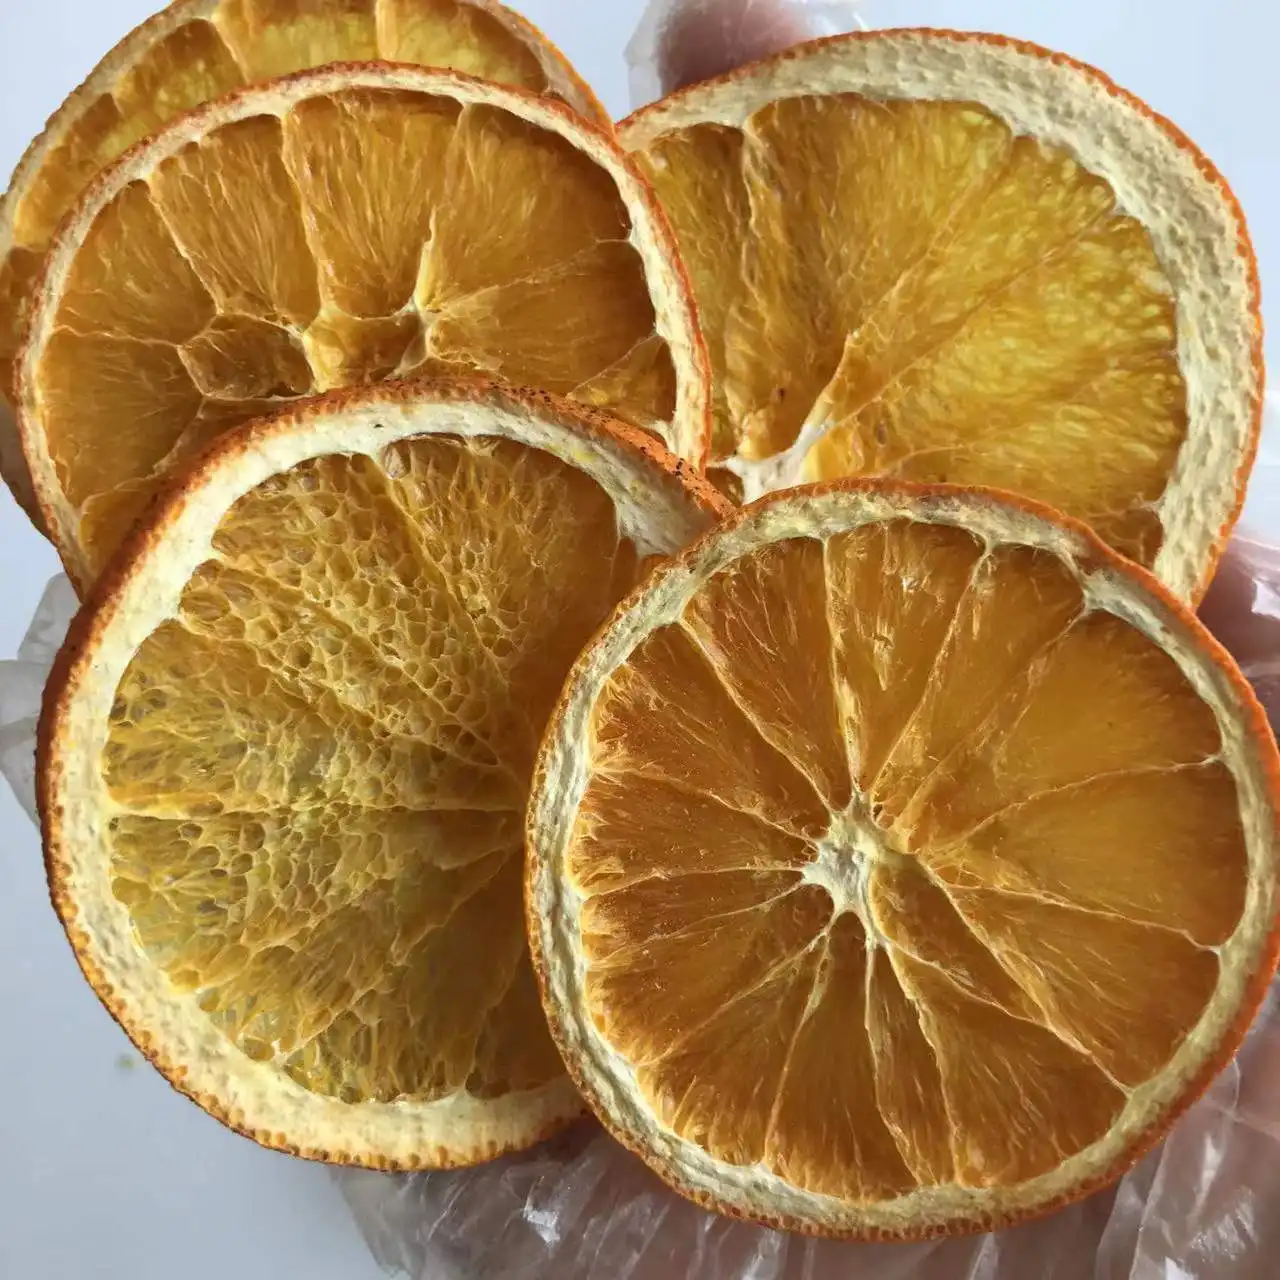 MD14แห้งผลไม้ชาธรรมชาติสุขภาพอาหารผลไม้แห้งส้มชิ้น